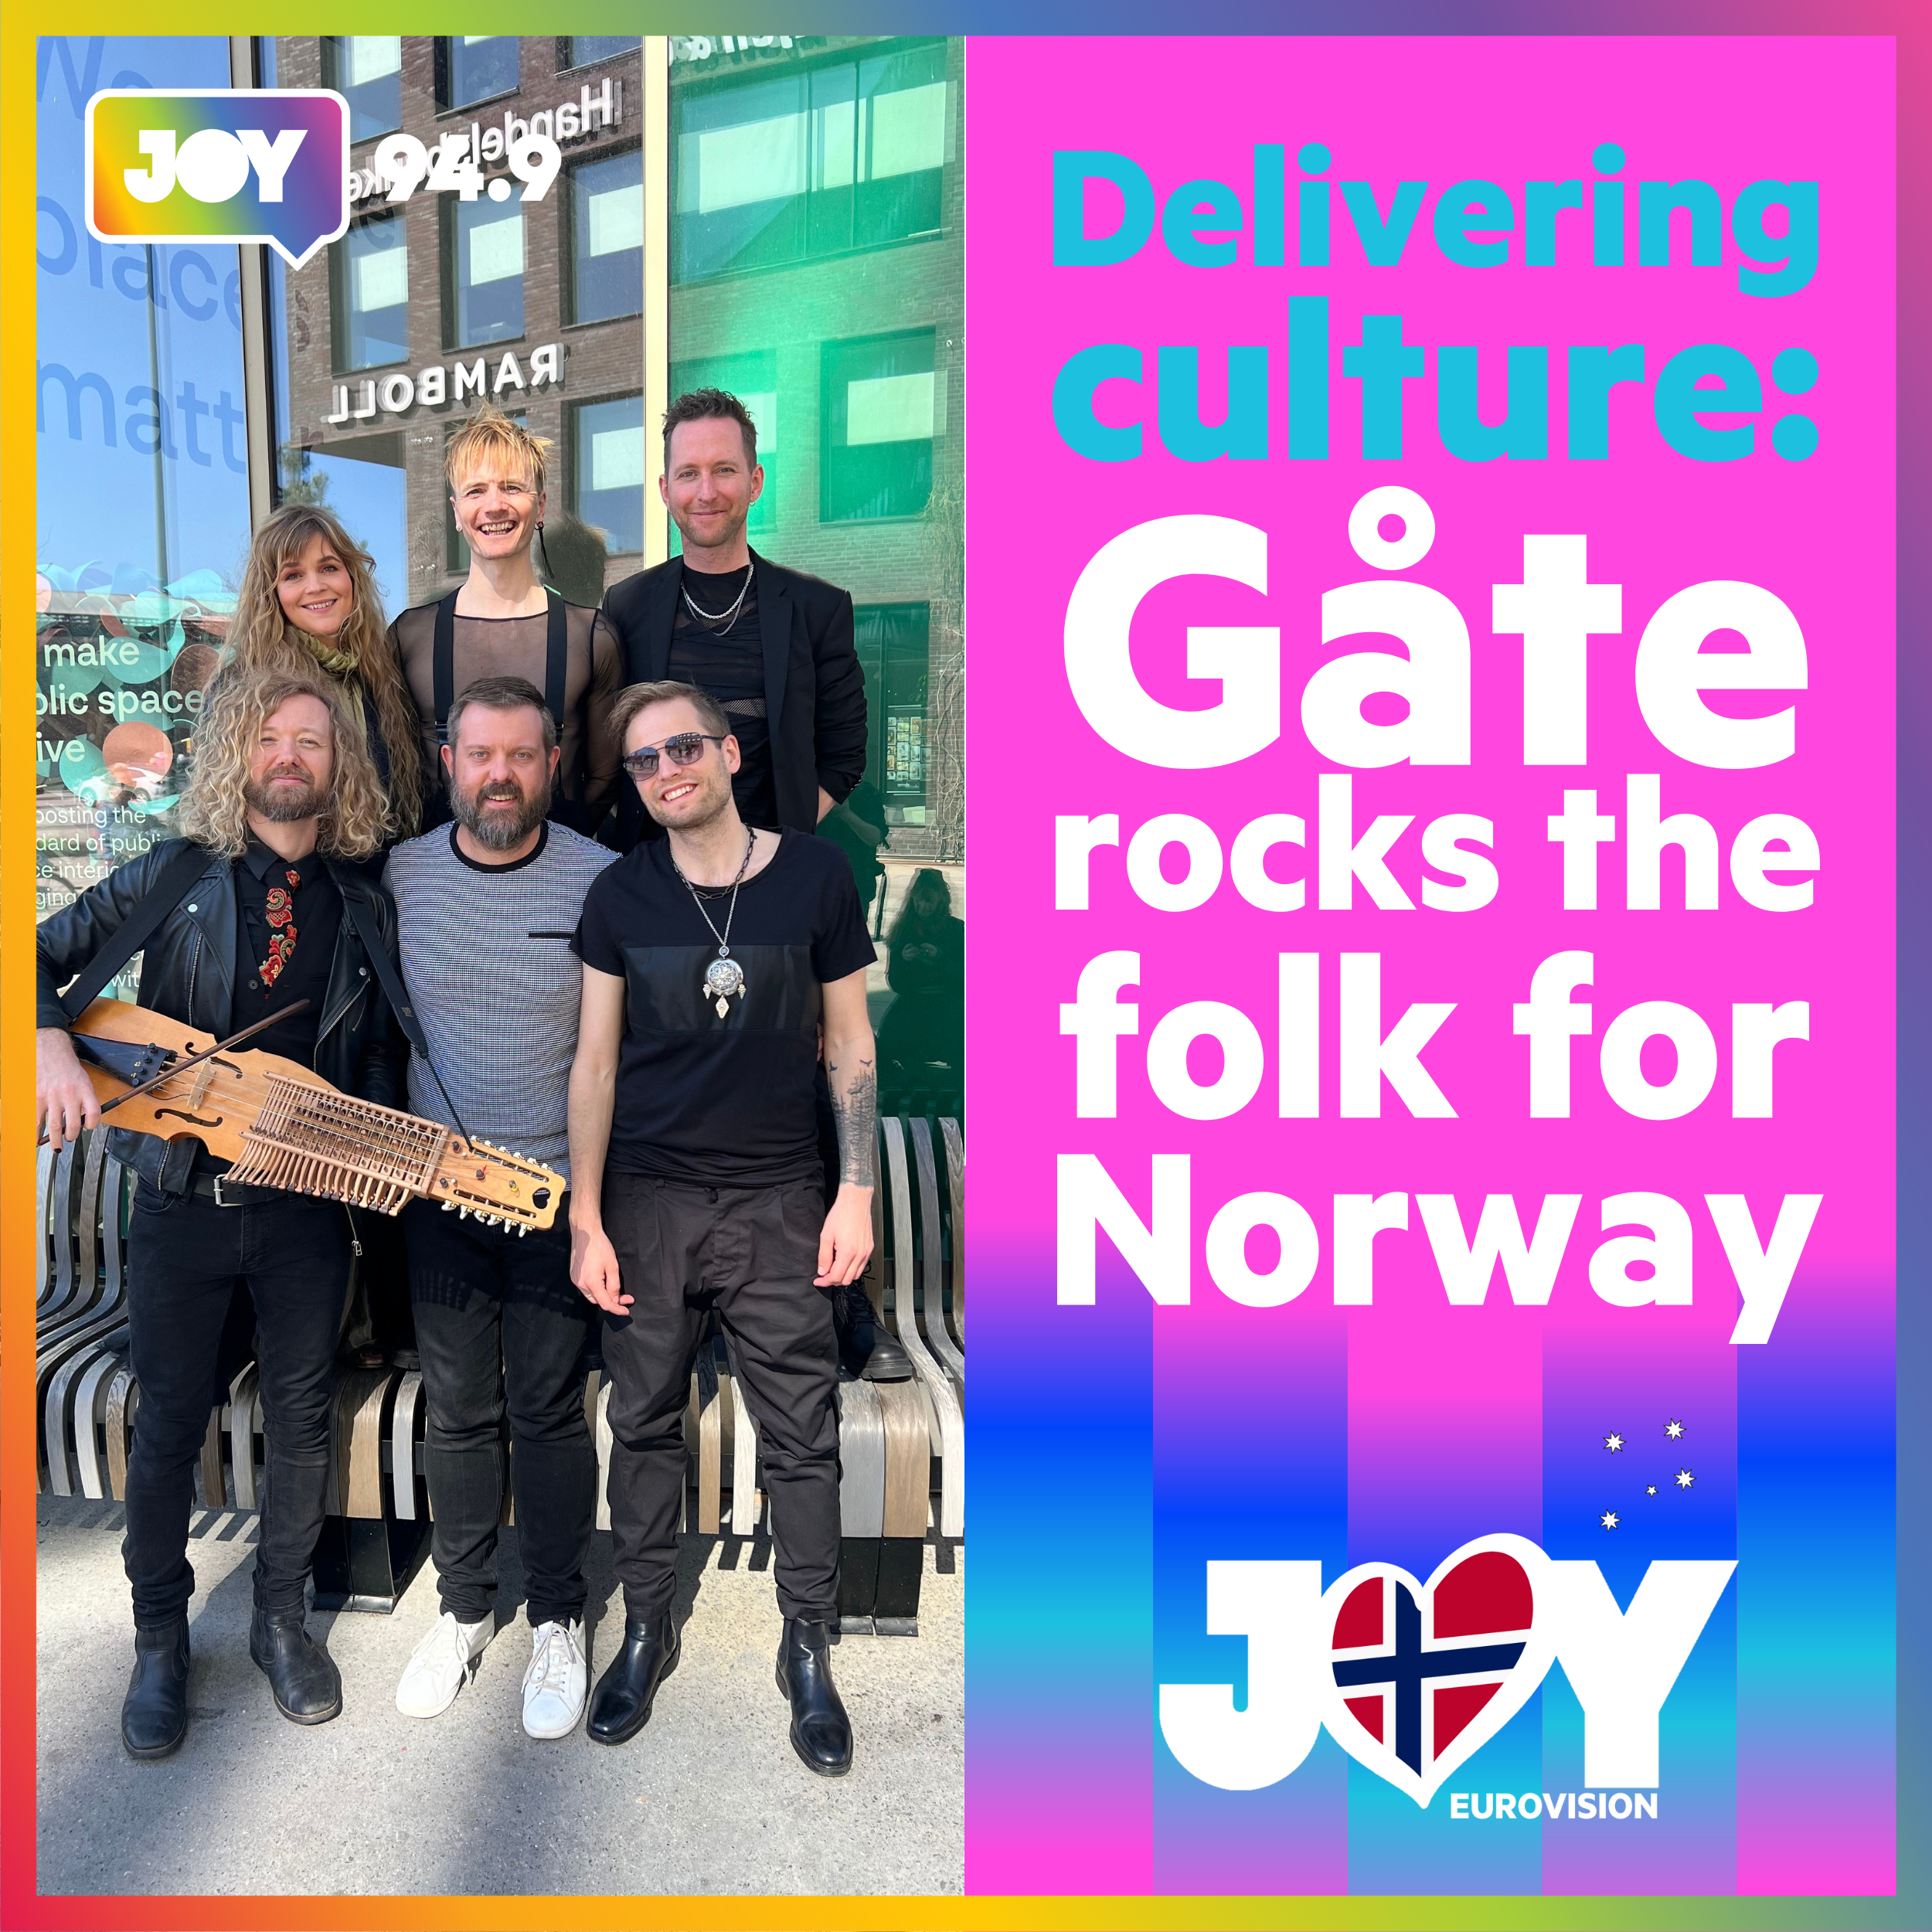 🇳🇴 Delivering culture: Gåte rocks the folk for Norway